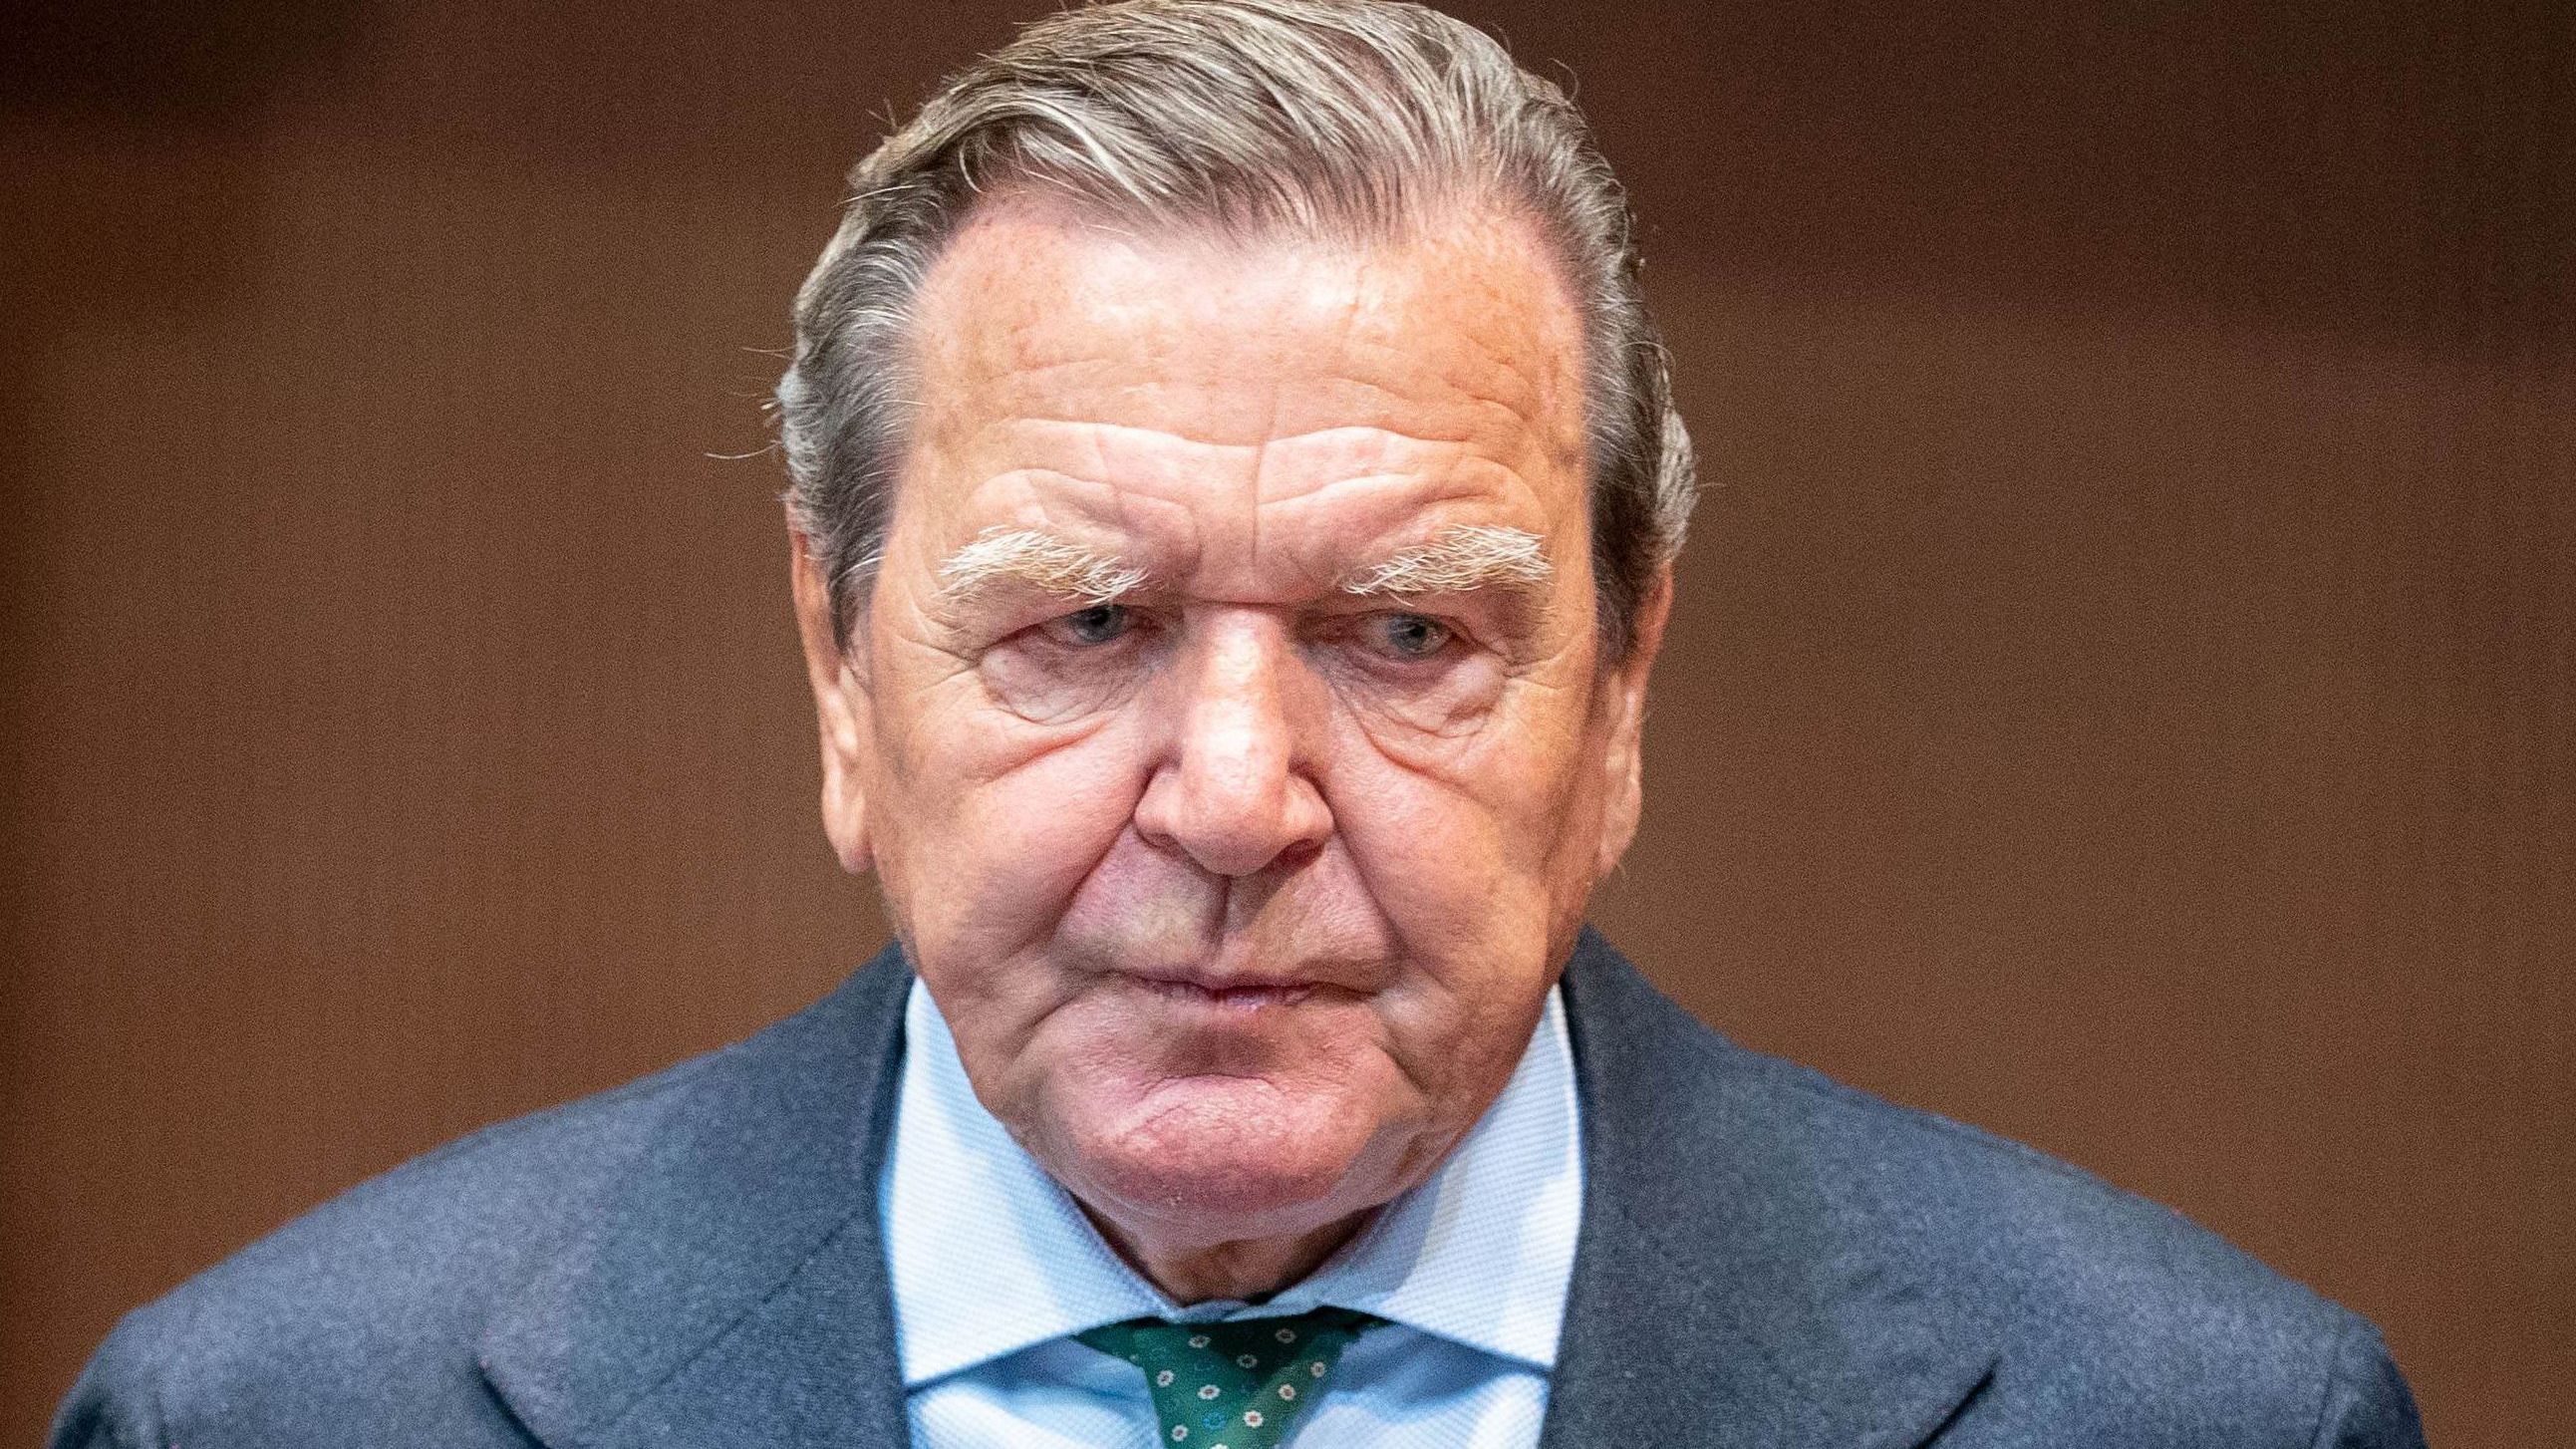 Mit seiner Partei im Streit: Ex-Bundeskanzler Gerhard Schröder (SPD)